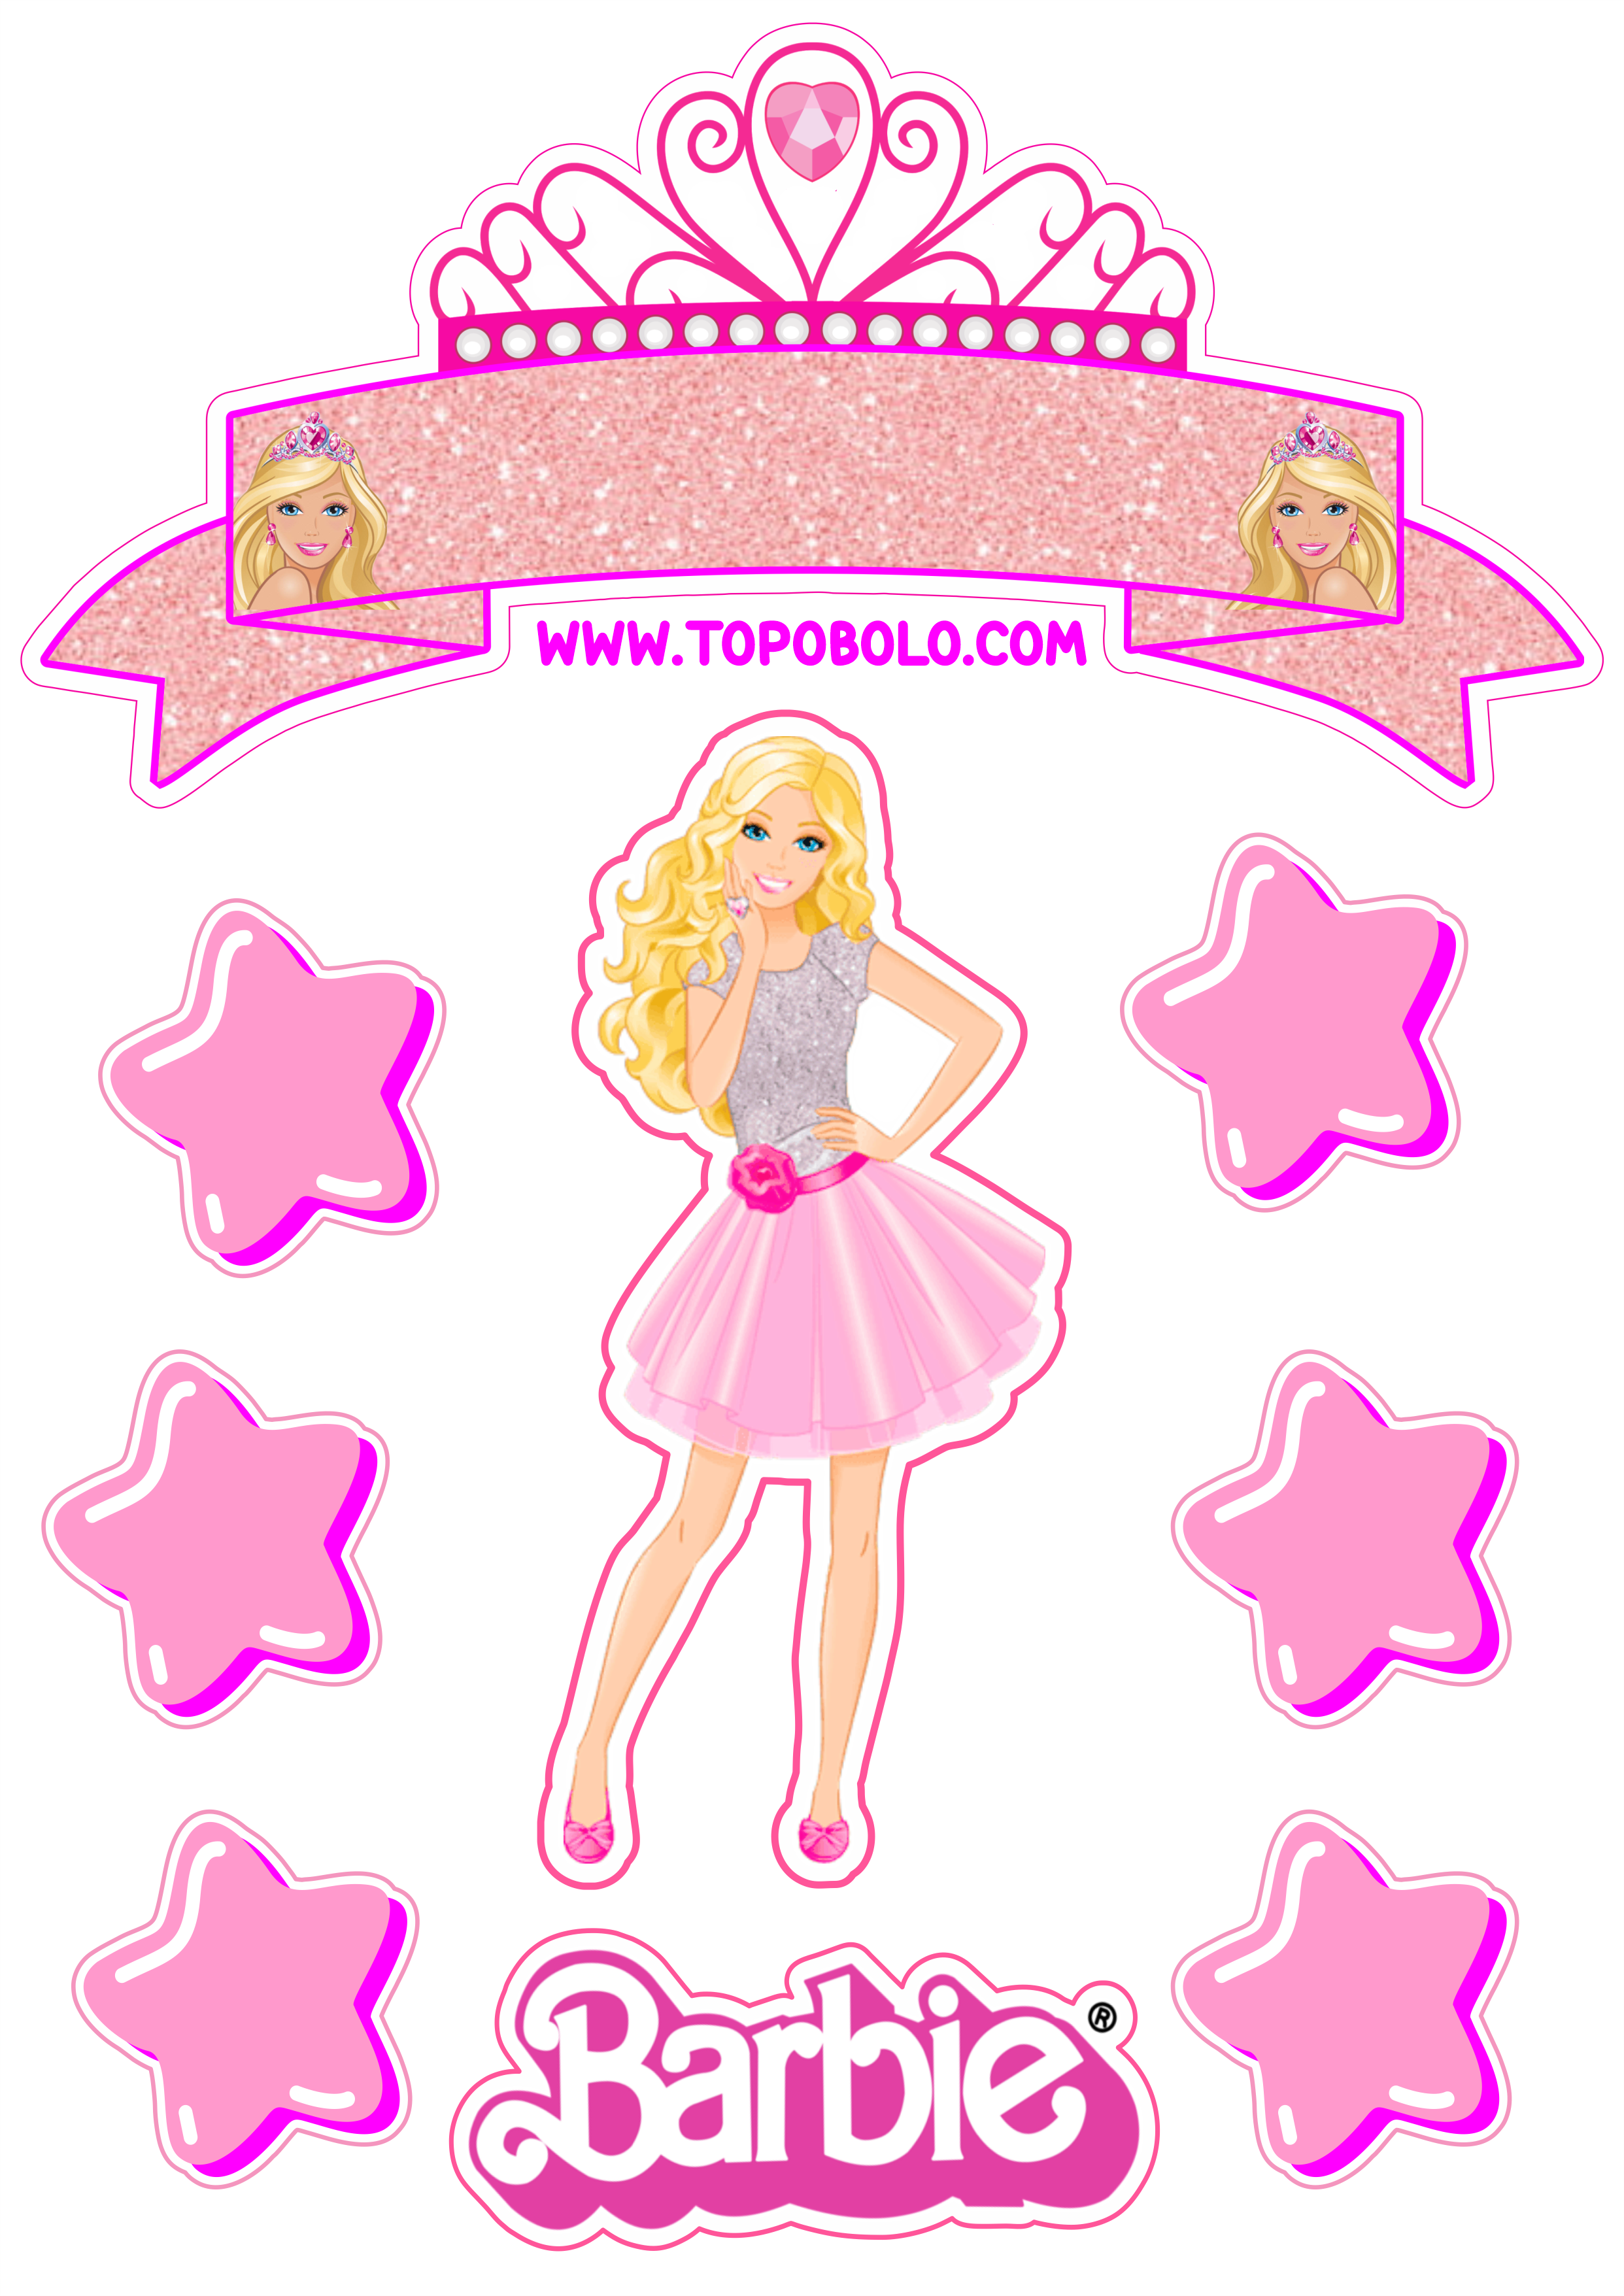 Topo de bolo para imprimir boneca Barbie festa de aniversário rosa menina estrelas papelaria criativa png